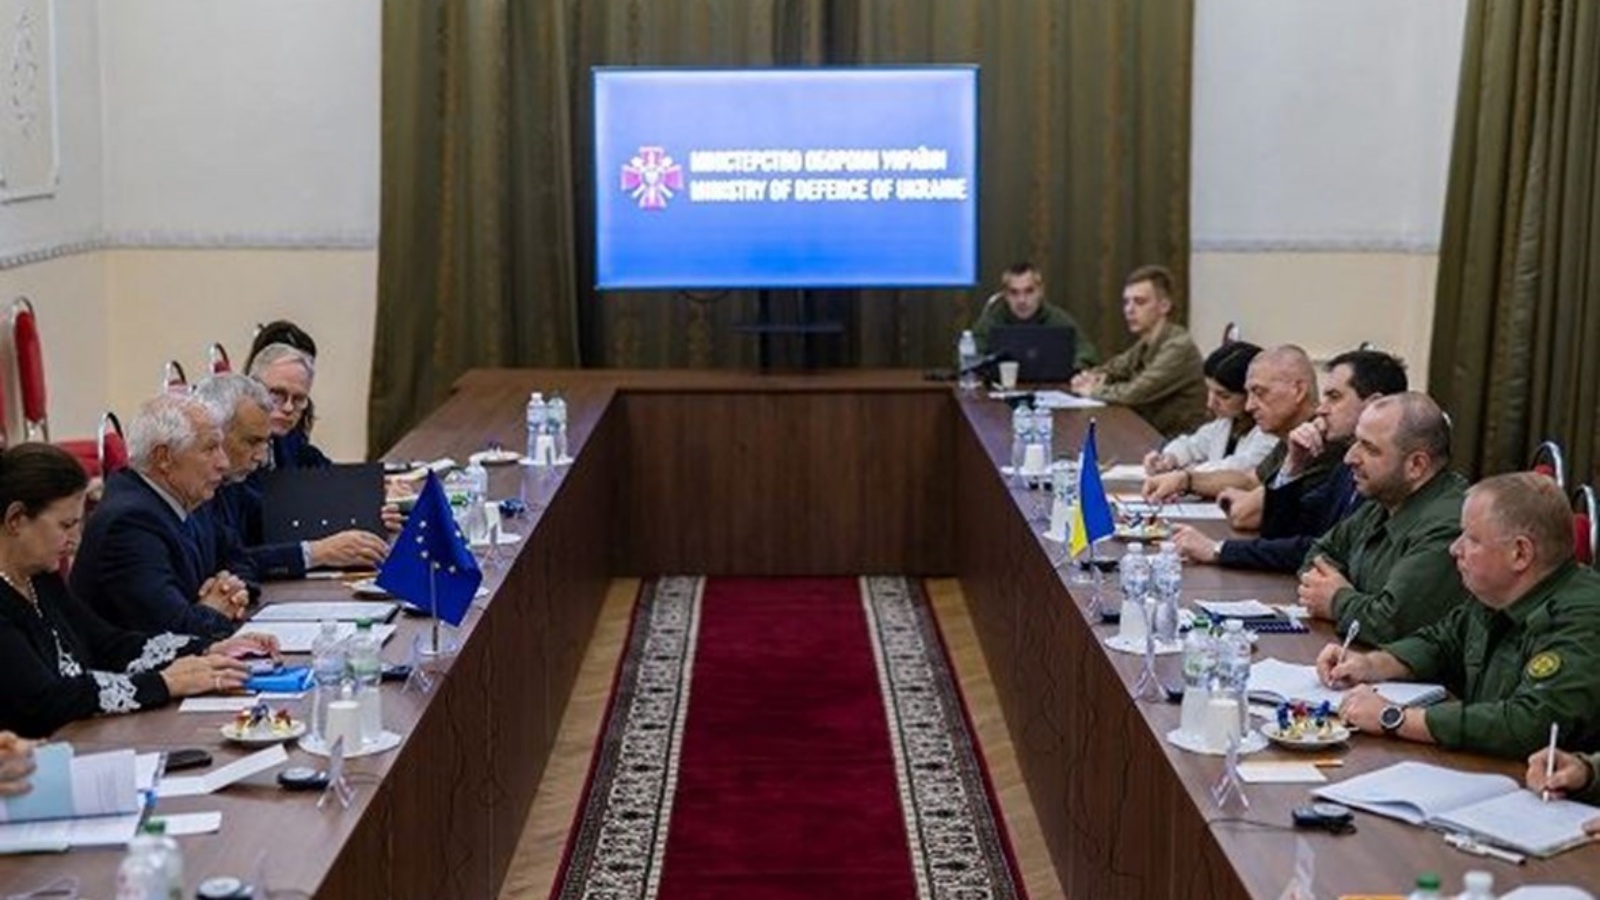 وزير الدفاع الأوكراني رستم أوميروف يحضر اجتماعًا مع الممثل الأعلى للاتحاد الأوروبي للشؤون الخارجية والسياسة الأمنية جوزيب بوريل في كييف